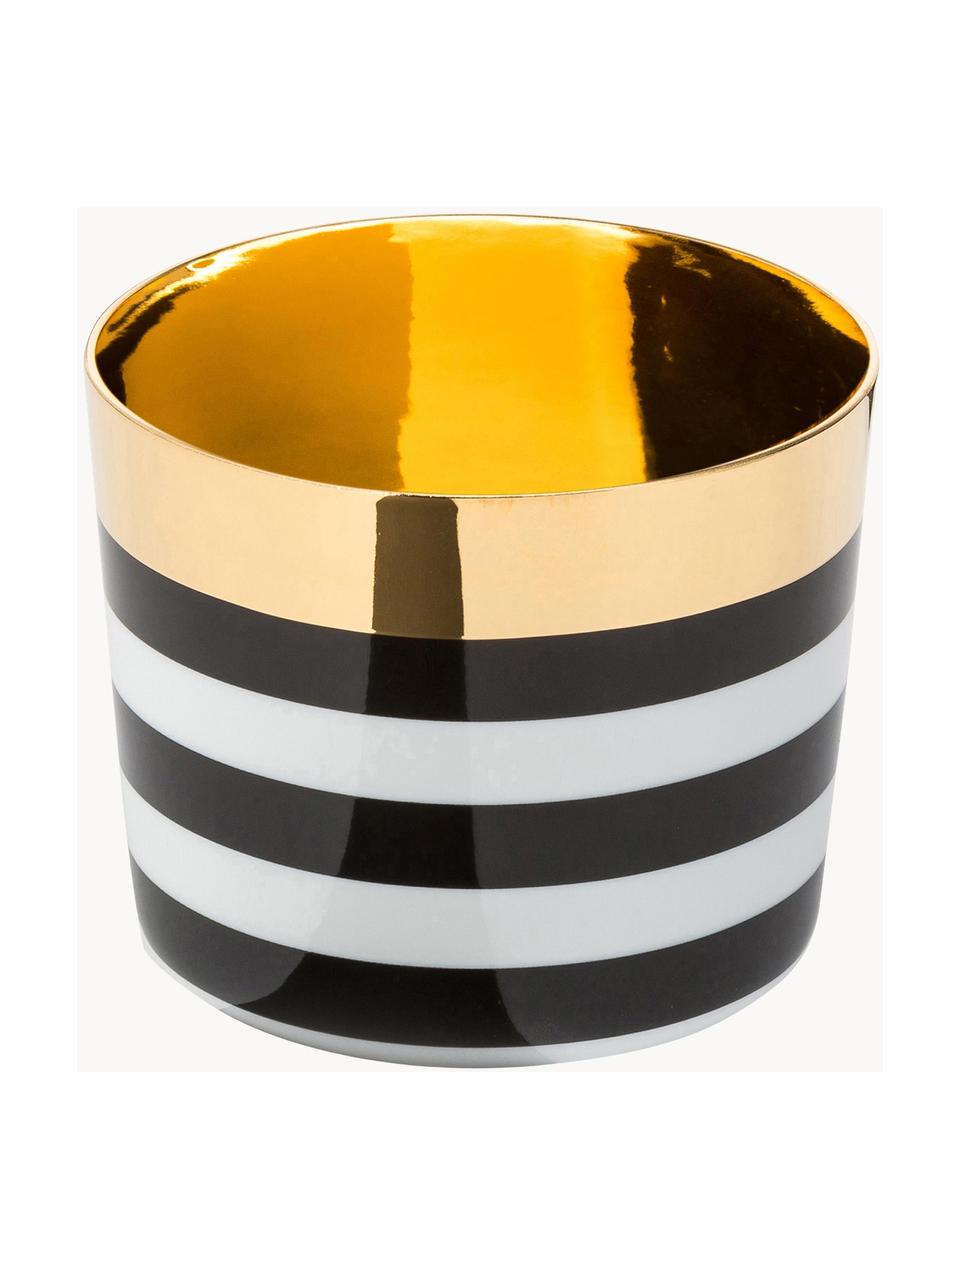 Pozlátený pohár na šampanské z porcelánu Sip of Gold, Čierna, biela, zlatá, Ø 9 x V 7 cm, 300 ml